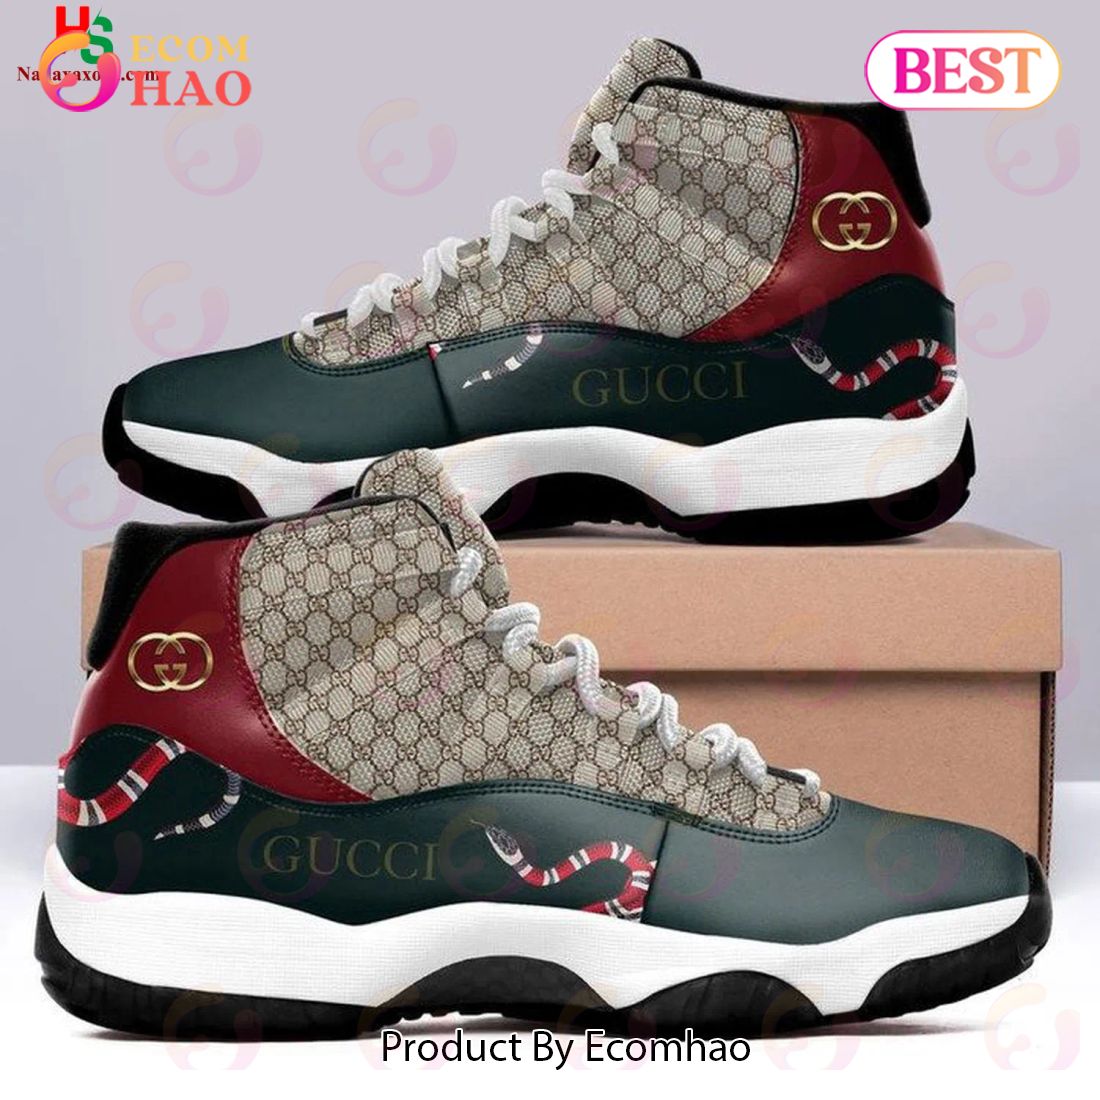 Snake Gucci Monogram Air Jordan 11 Shoes